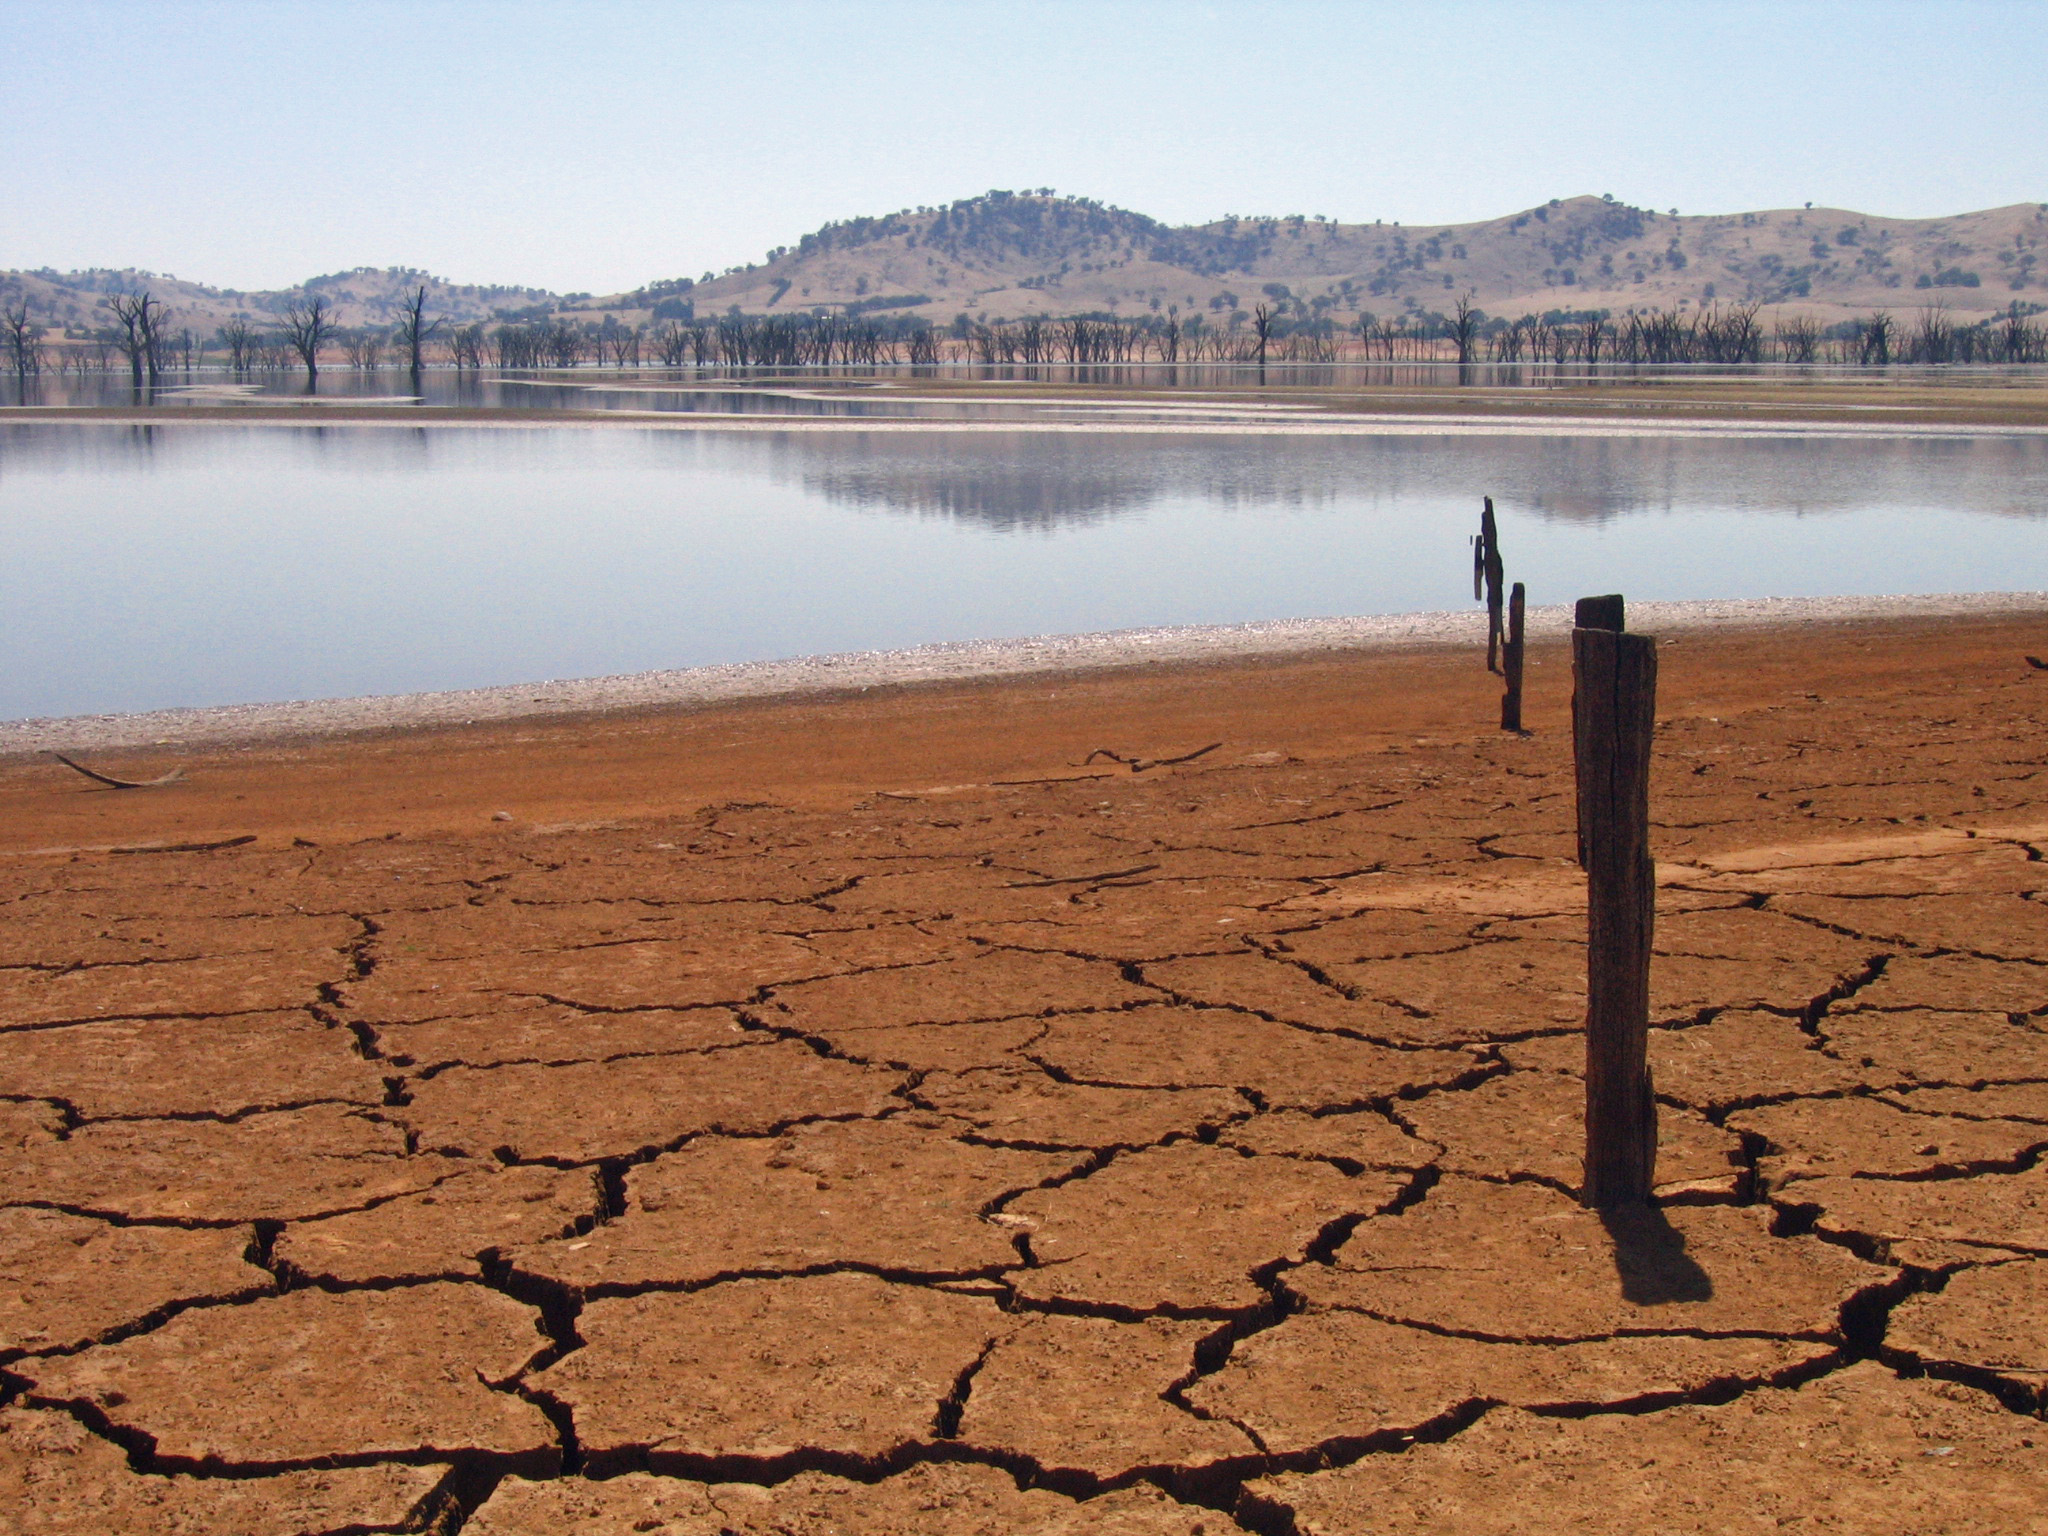 Le changement climatique pourrait réduire la surface des terres exploitables par l'agriculture. © Tim J Keegan, Flickr, CC by sa 2.0